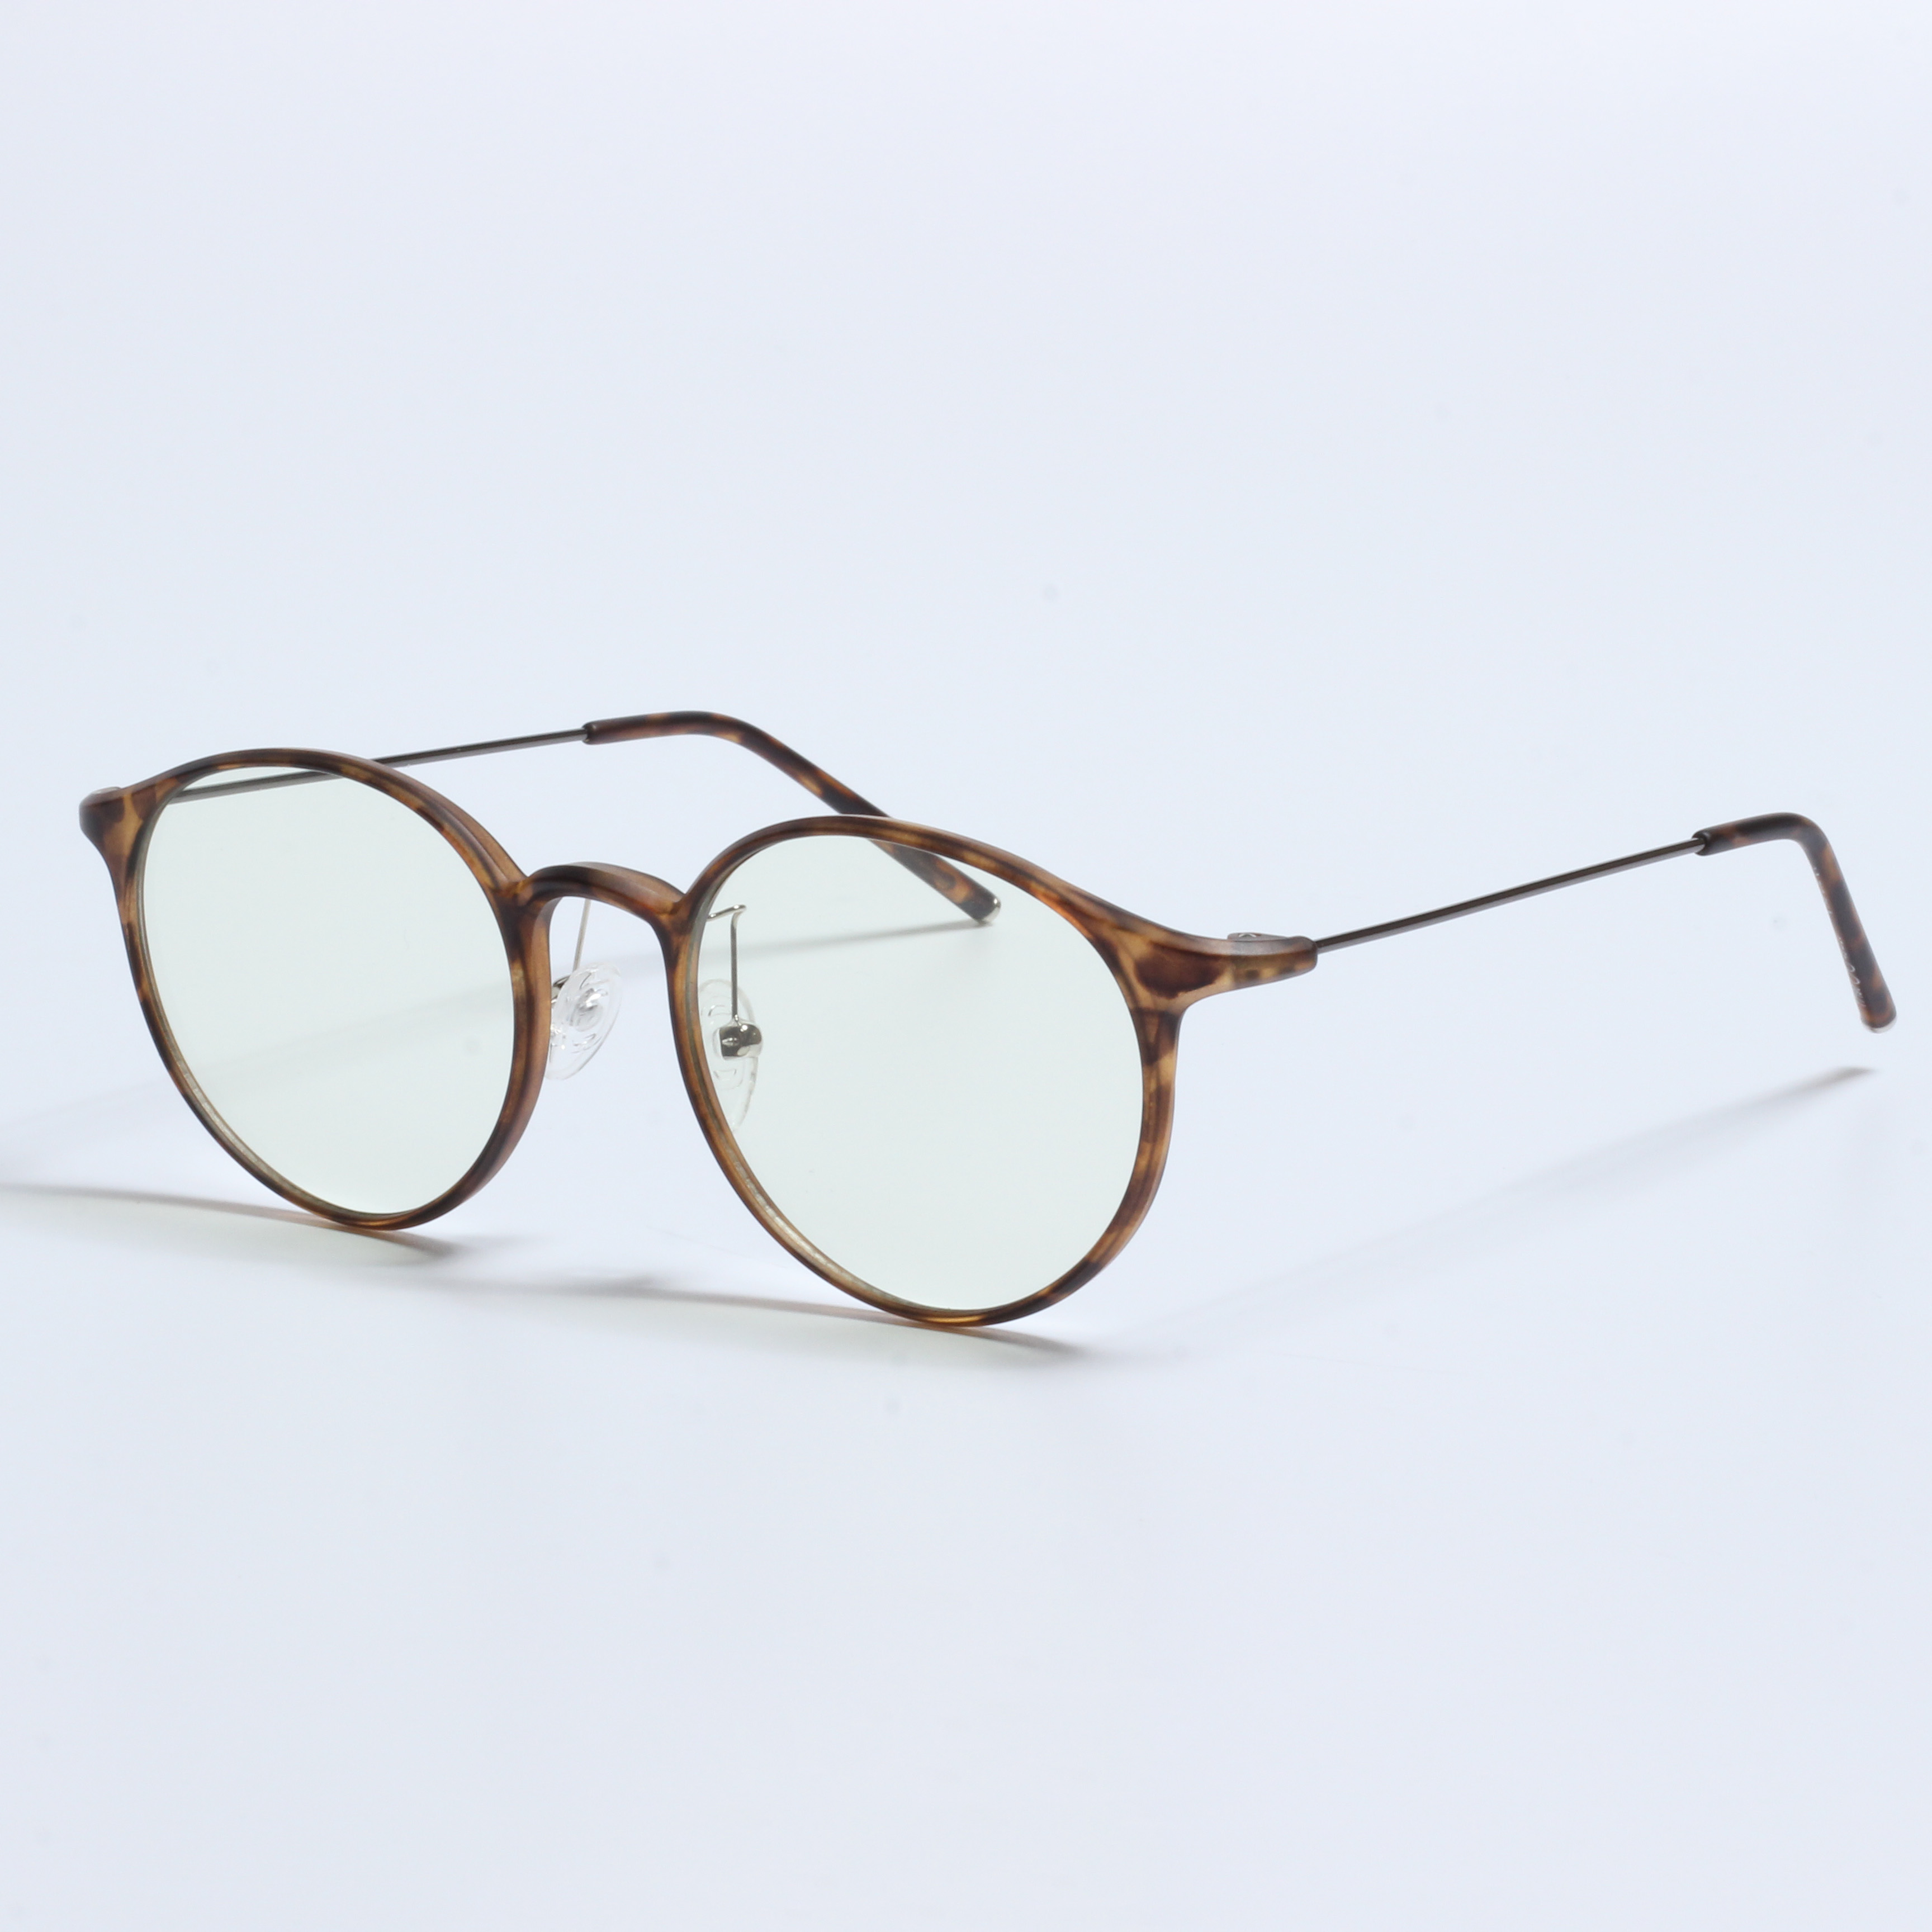 Venda a l'engròs de fàbrica de la Xina ulleres de bloqueig blaves noves més barates (8)